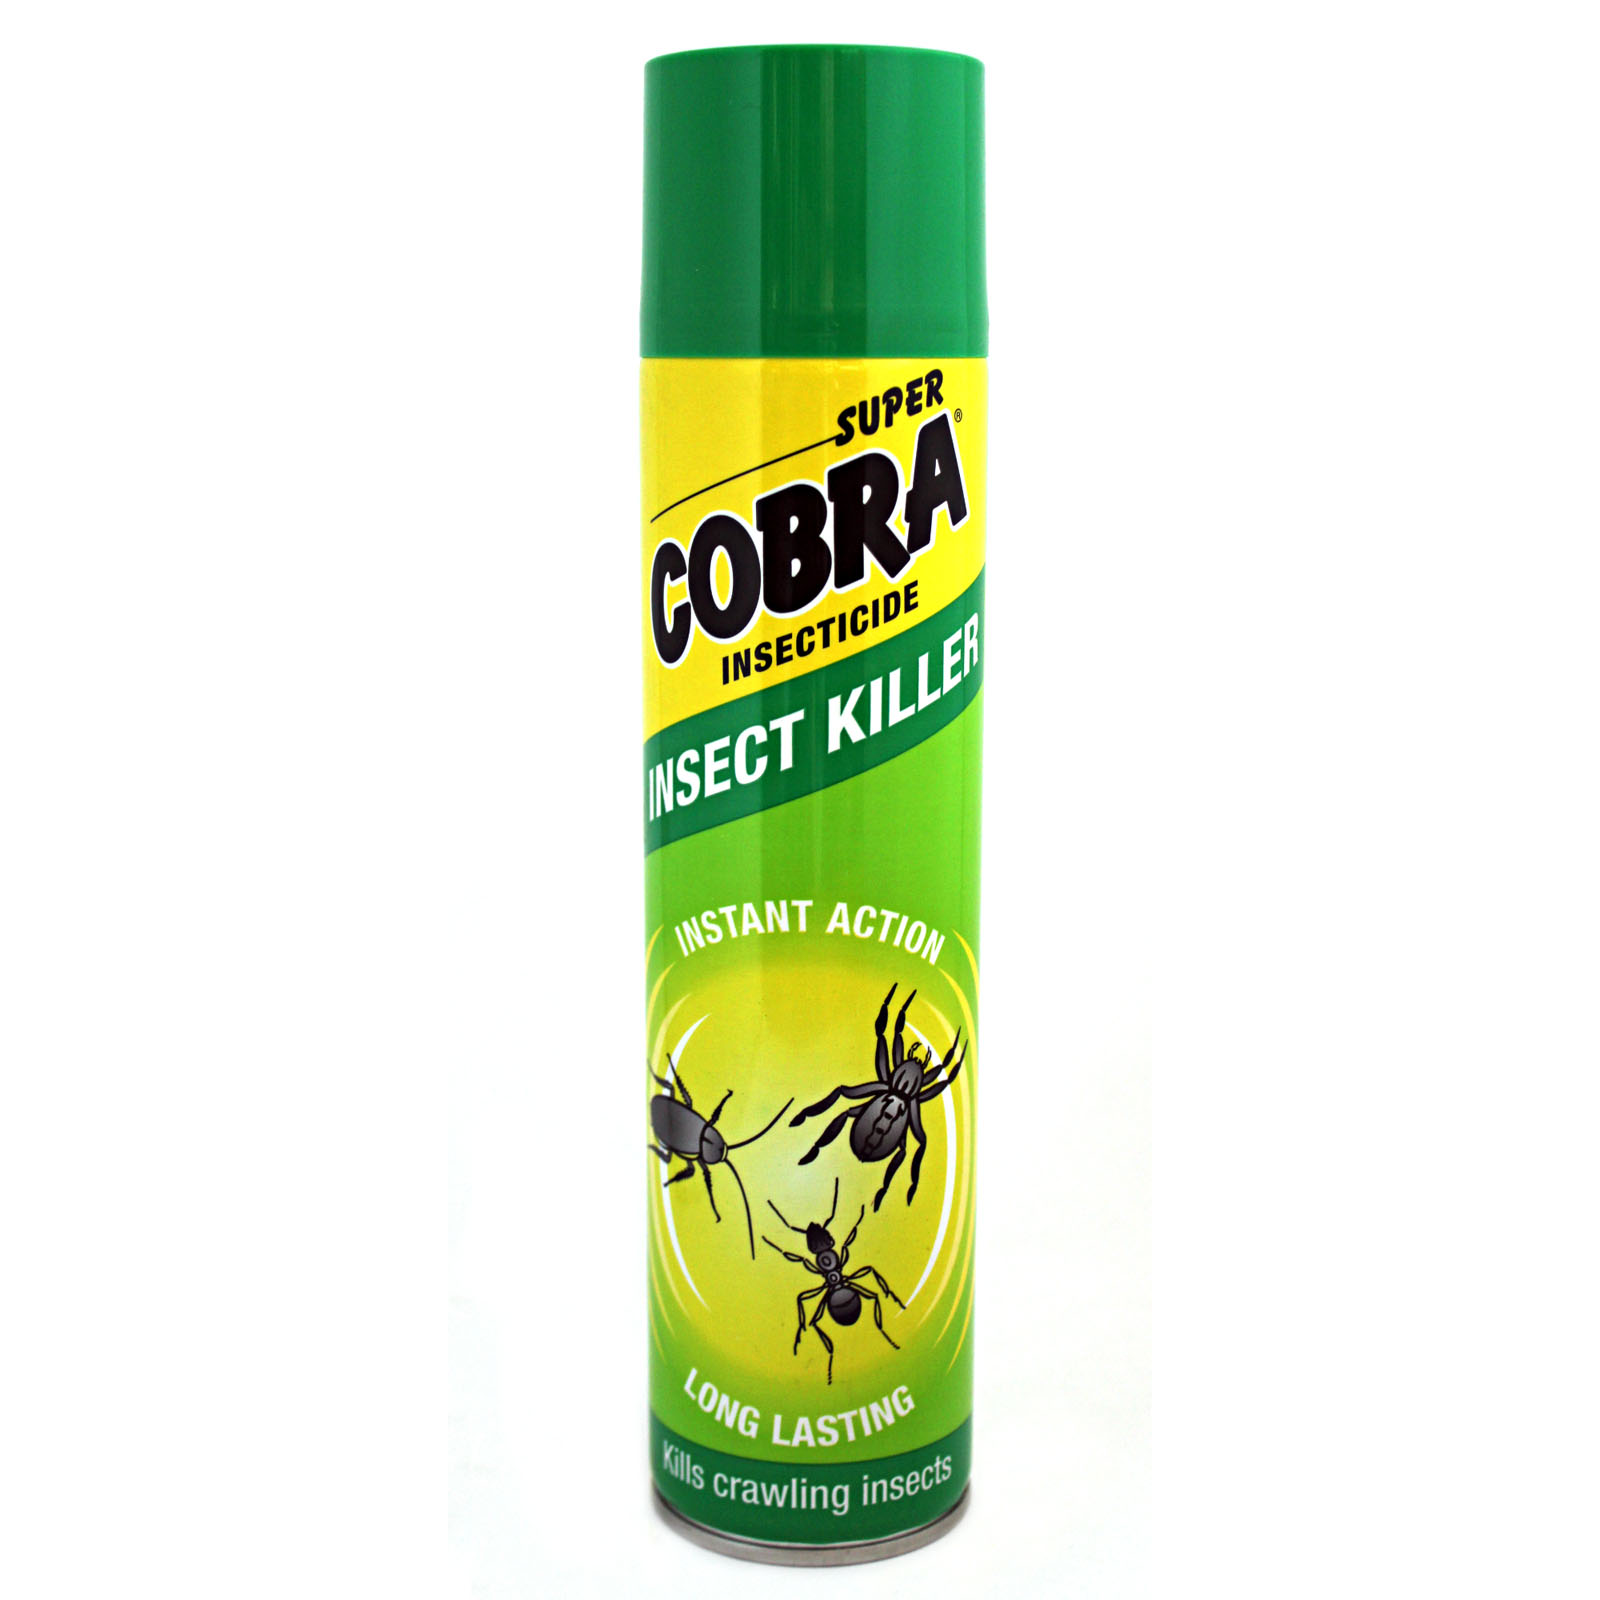 Средство отравы. Super Cobra insect Killer инсектицидный аэрозоль от ползающих насекомых 400 мл. Combat superspray аэрозоль от насекомых, 400мл. Аэрозоль супер Кобра 400мл.. Аэрозоль от ползающих насекомых Кобра 400мл (12).